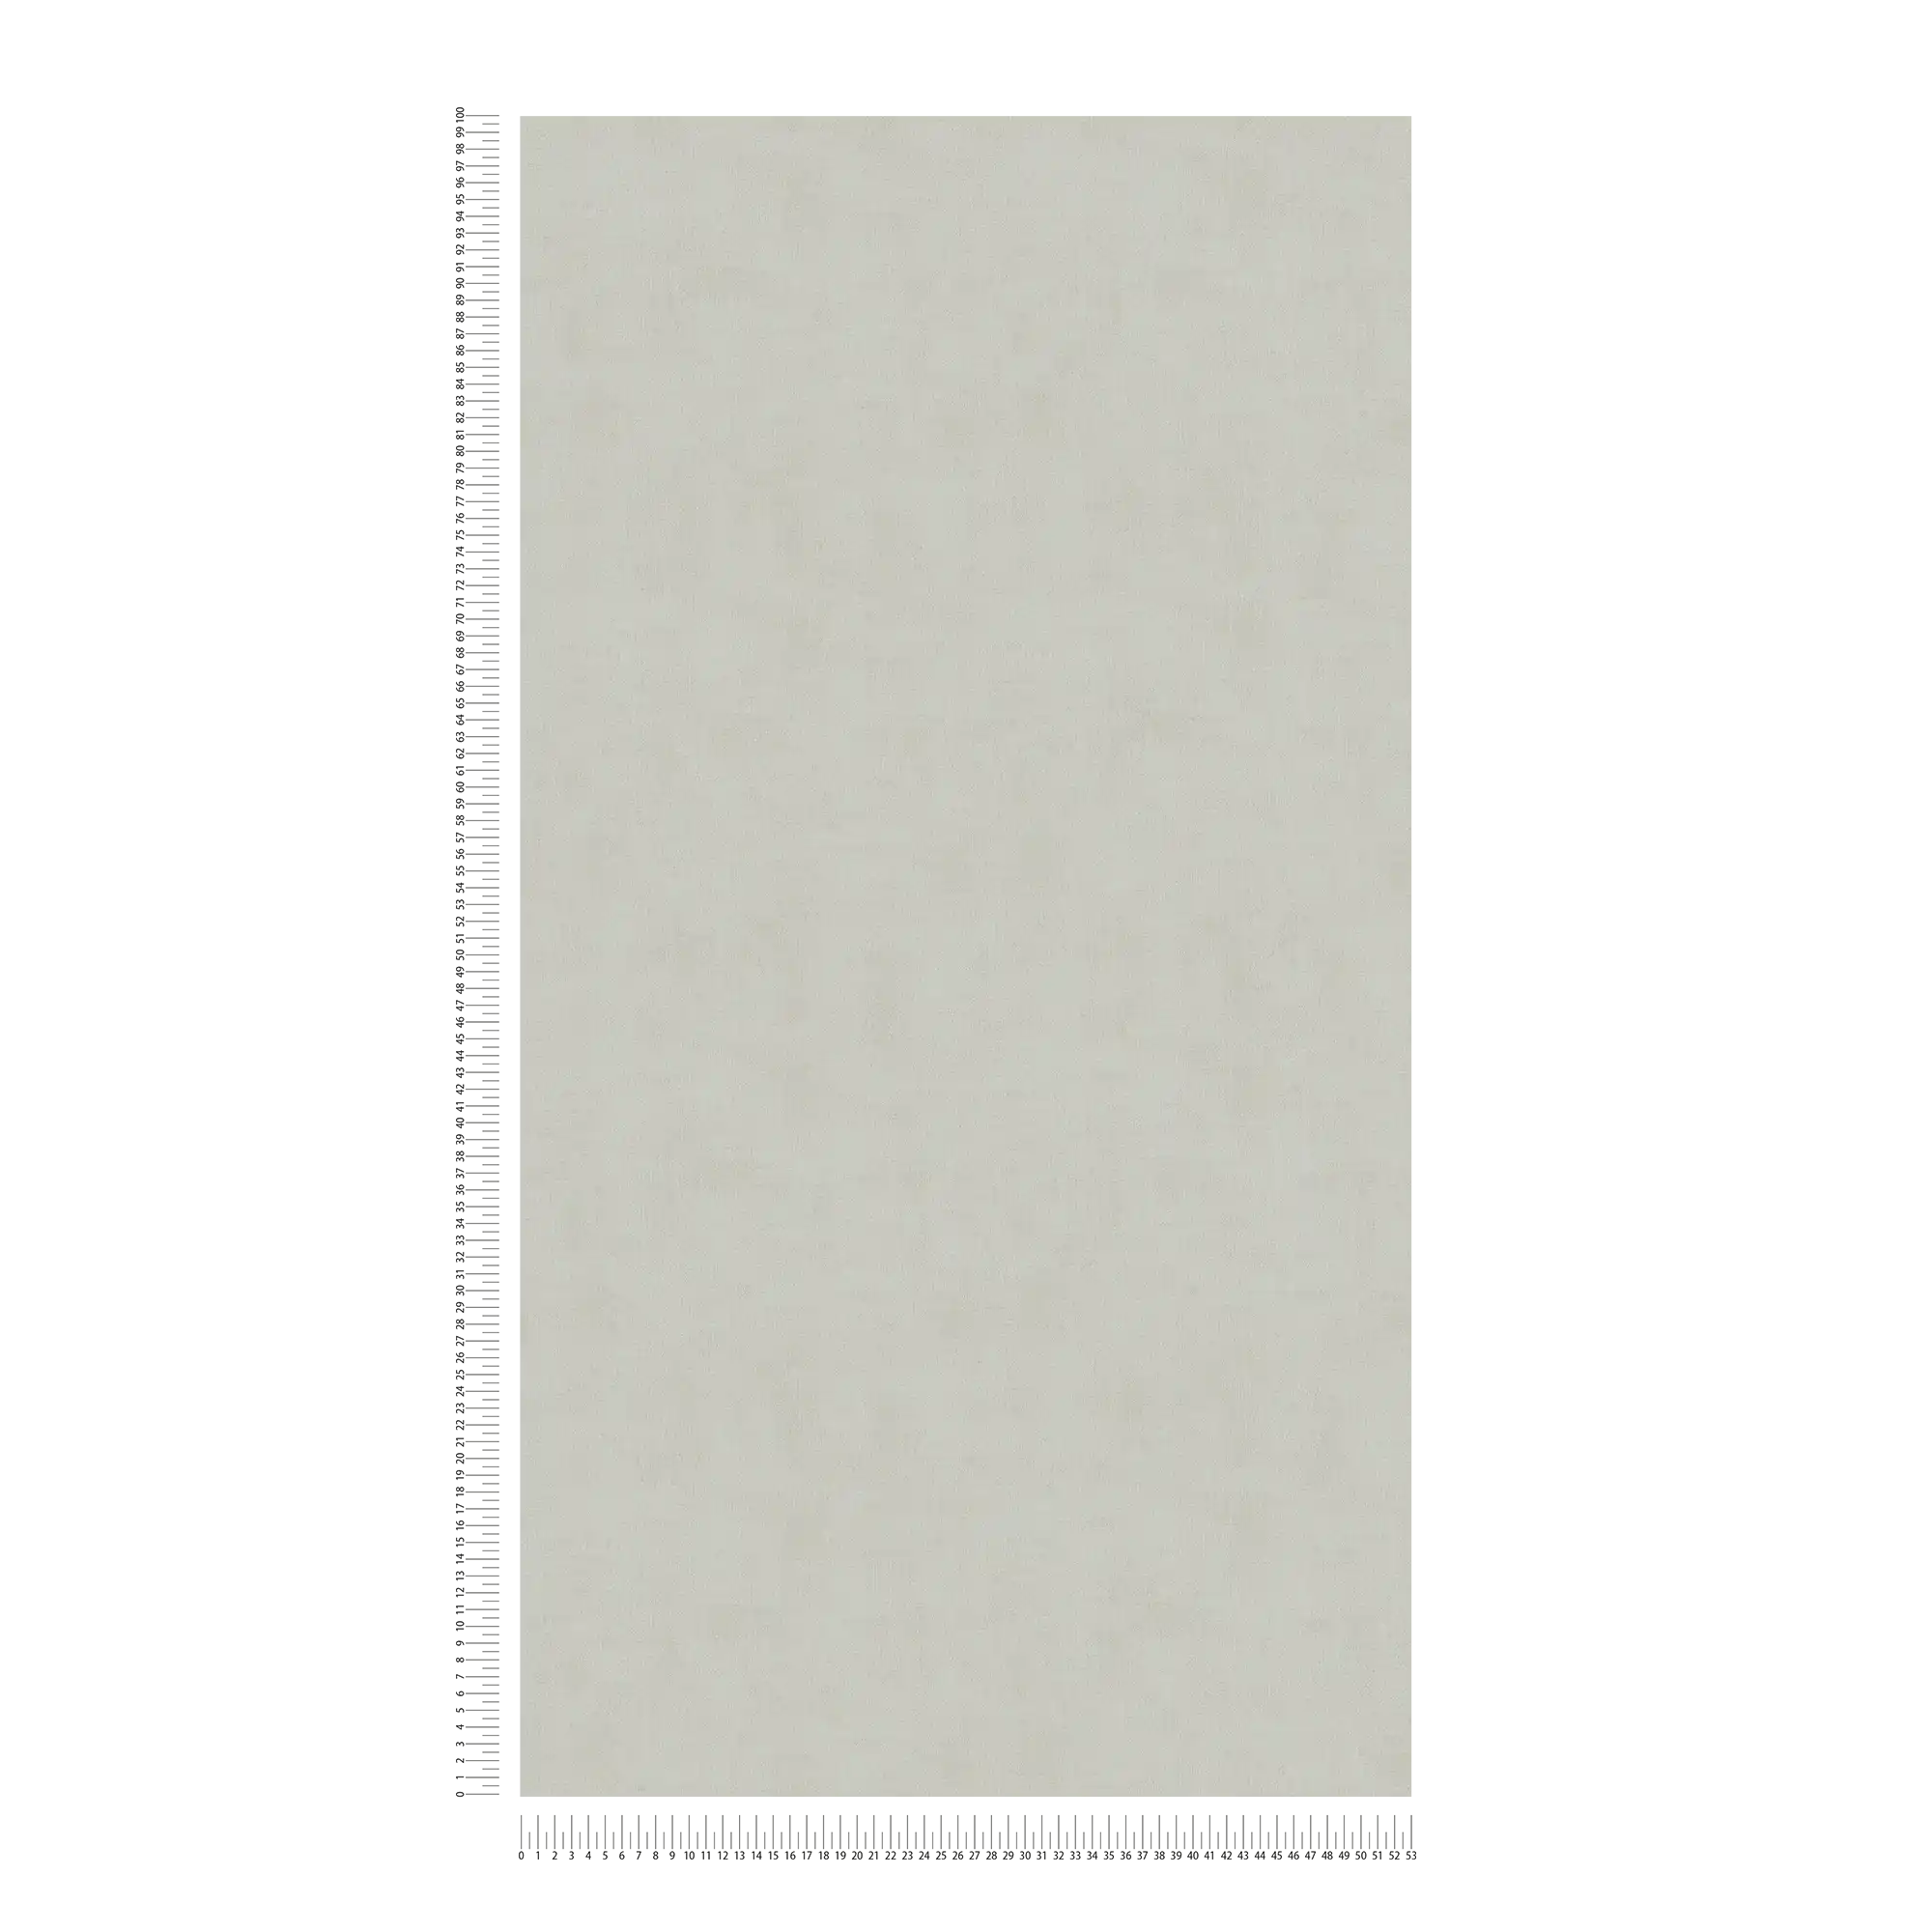             Carta da parati in tessuto non tessuto a tinta unita con struttura discreta - beige
        